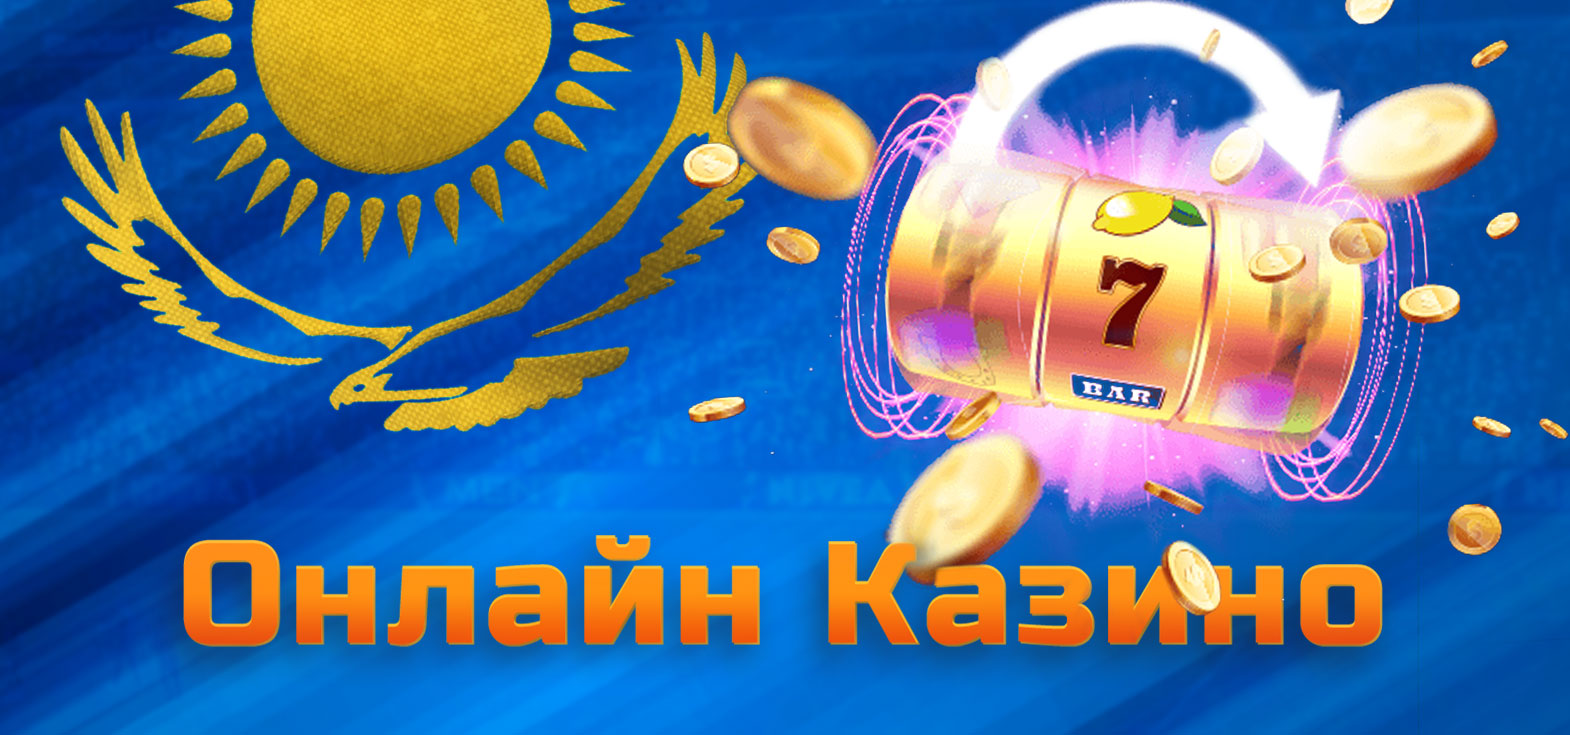 Все игры и провайдеры доступные в онлайн казино Mostbet в Казахстане.